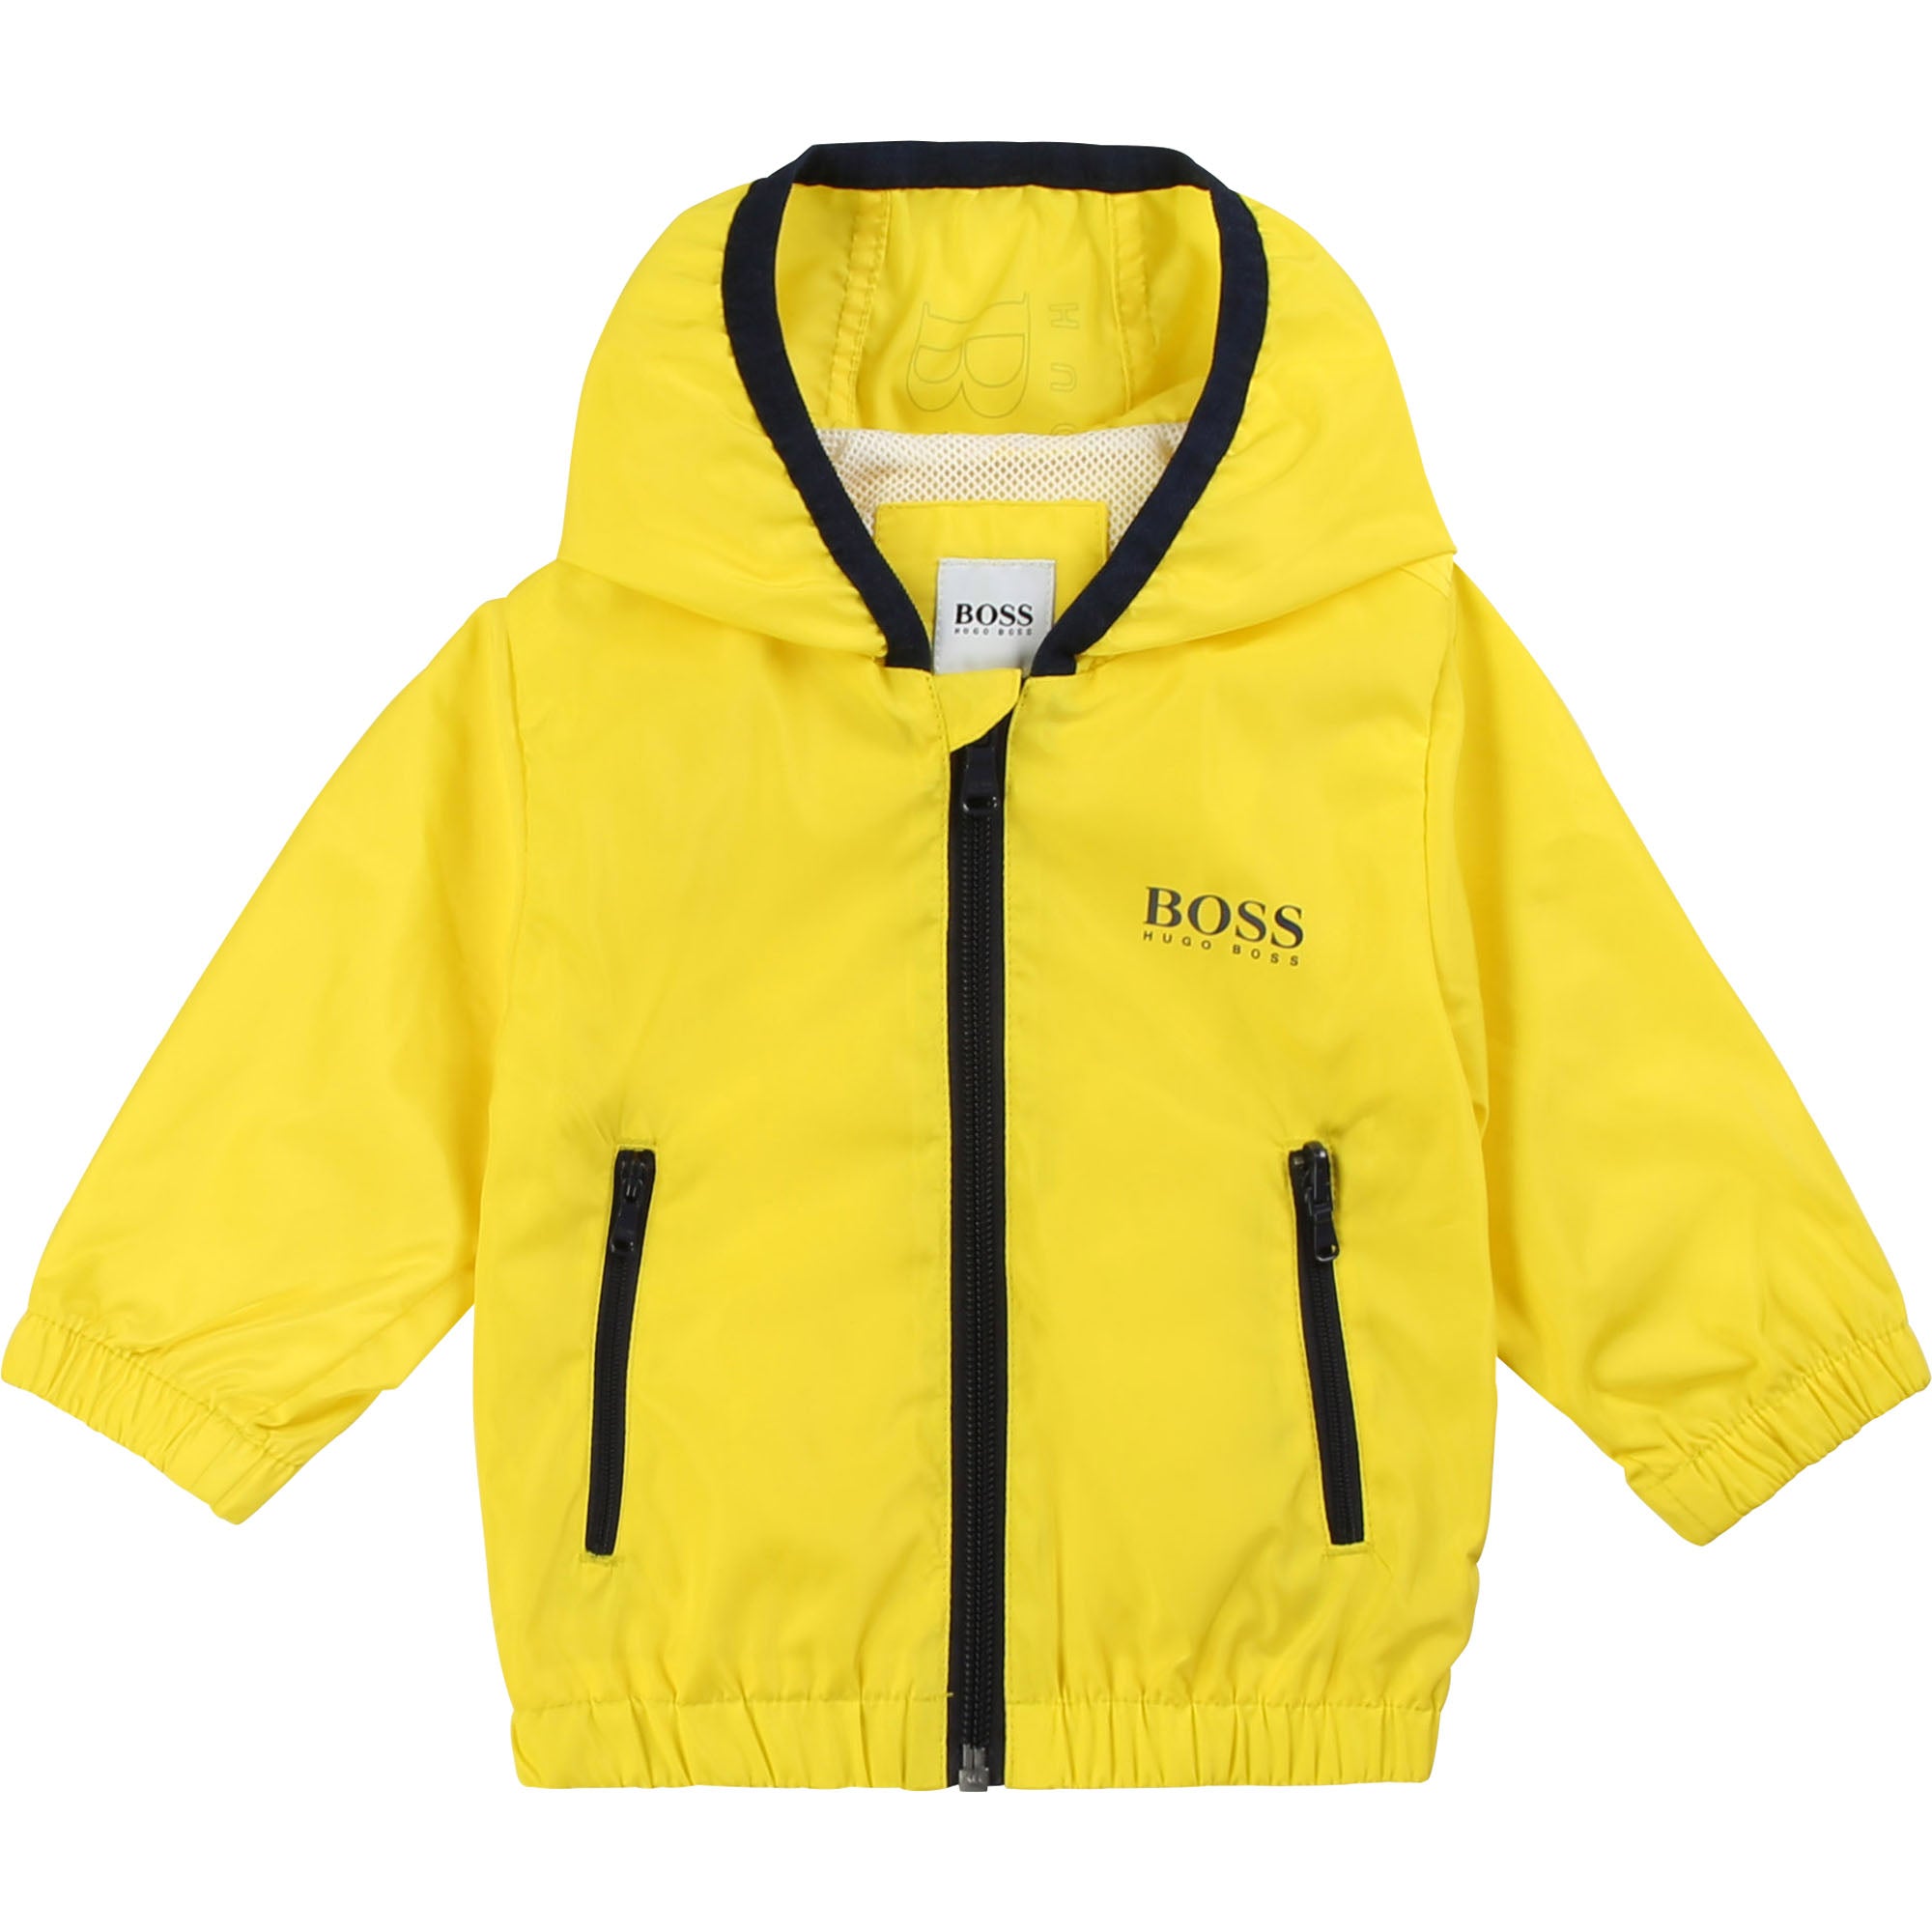 Baby Boys Yellow Zip-up Jacket